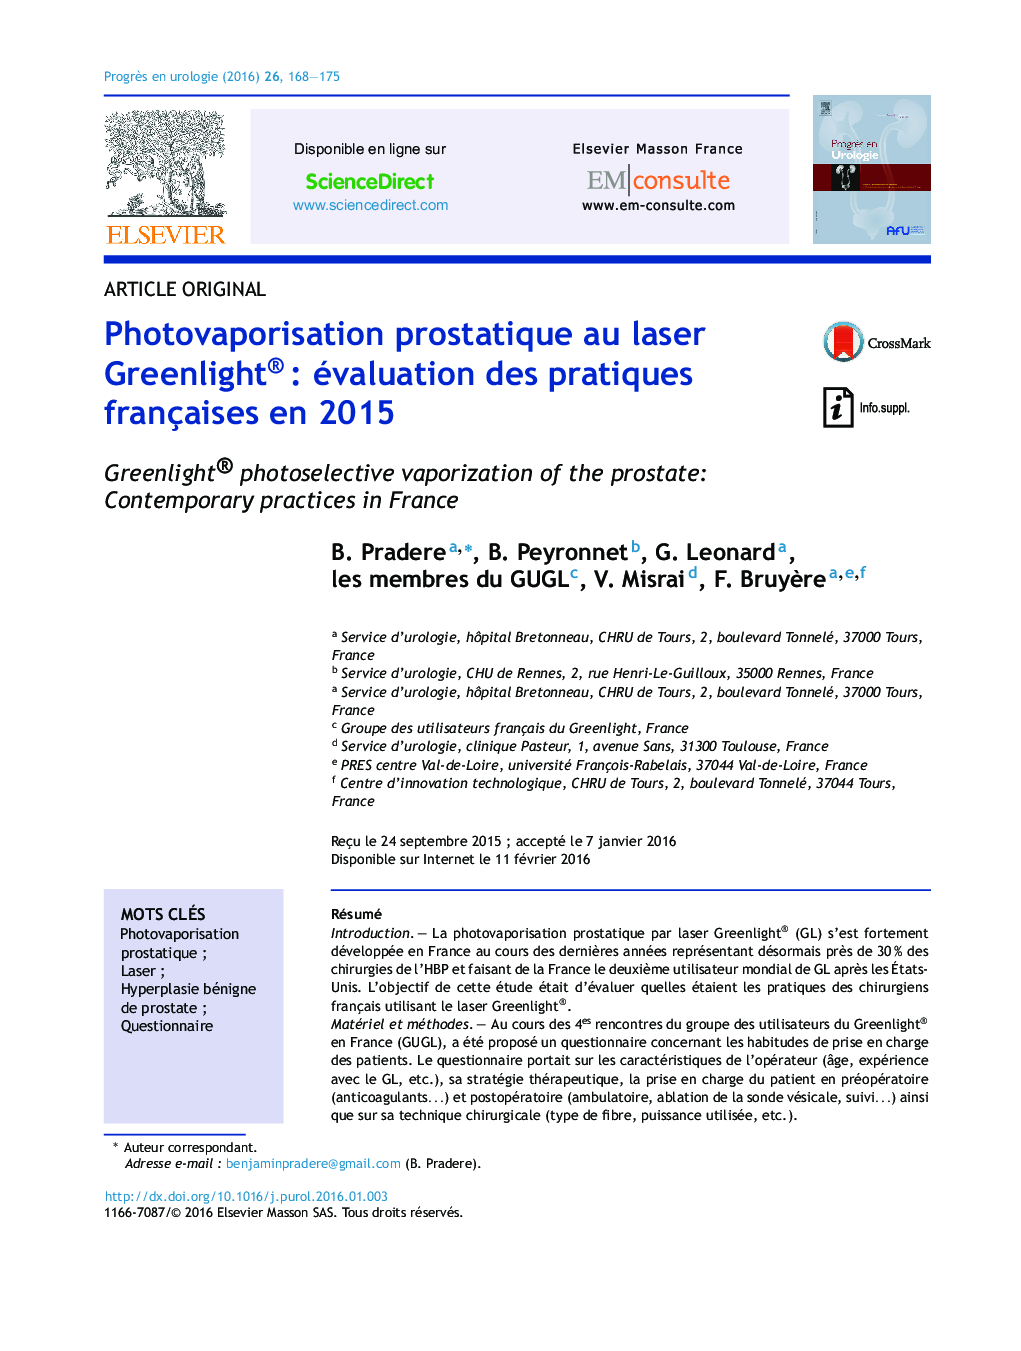 Photovaporisation prostatique au laser Greenlight® : évaluation des pratiques françaises en 2015